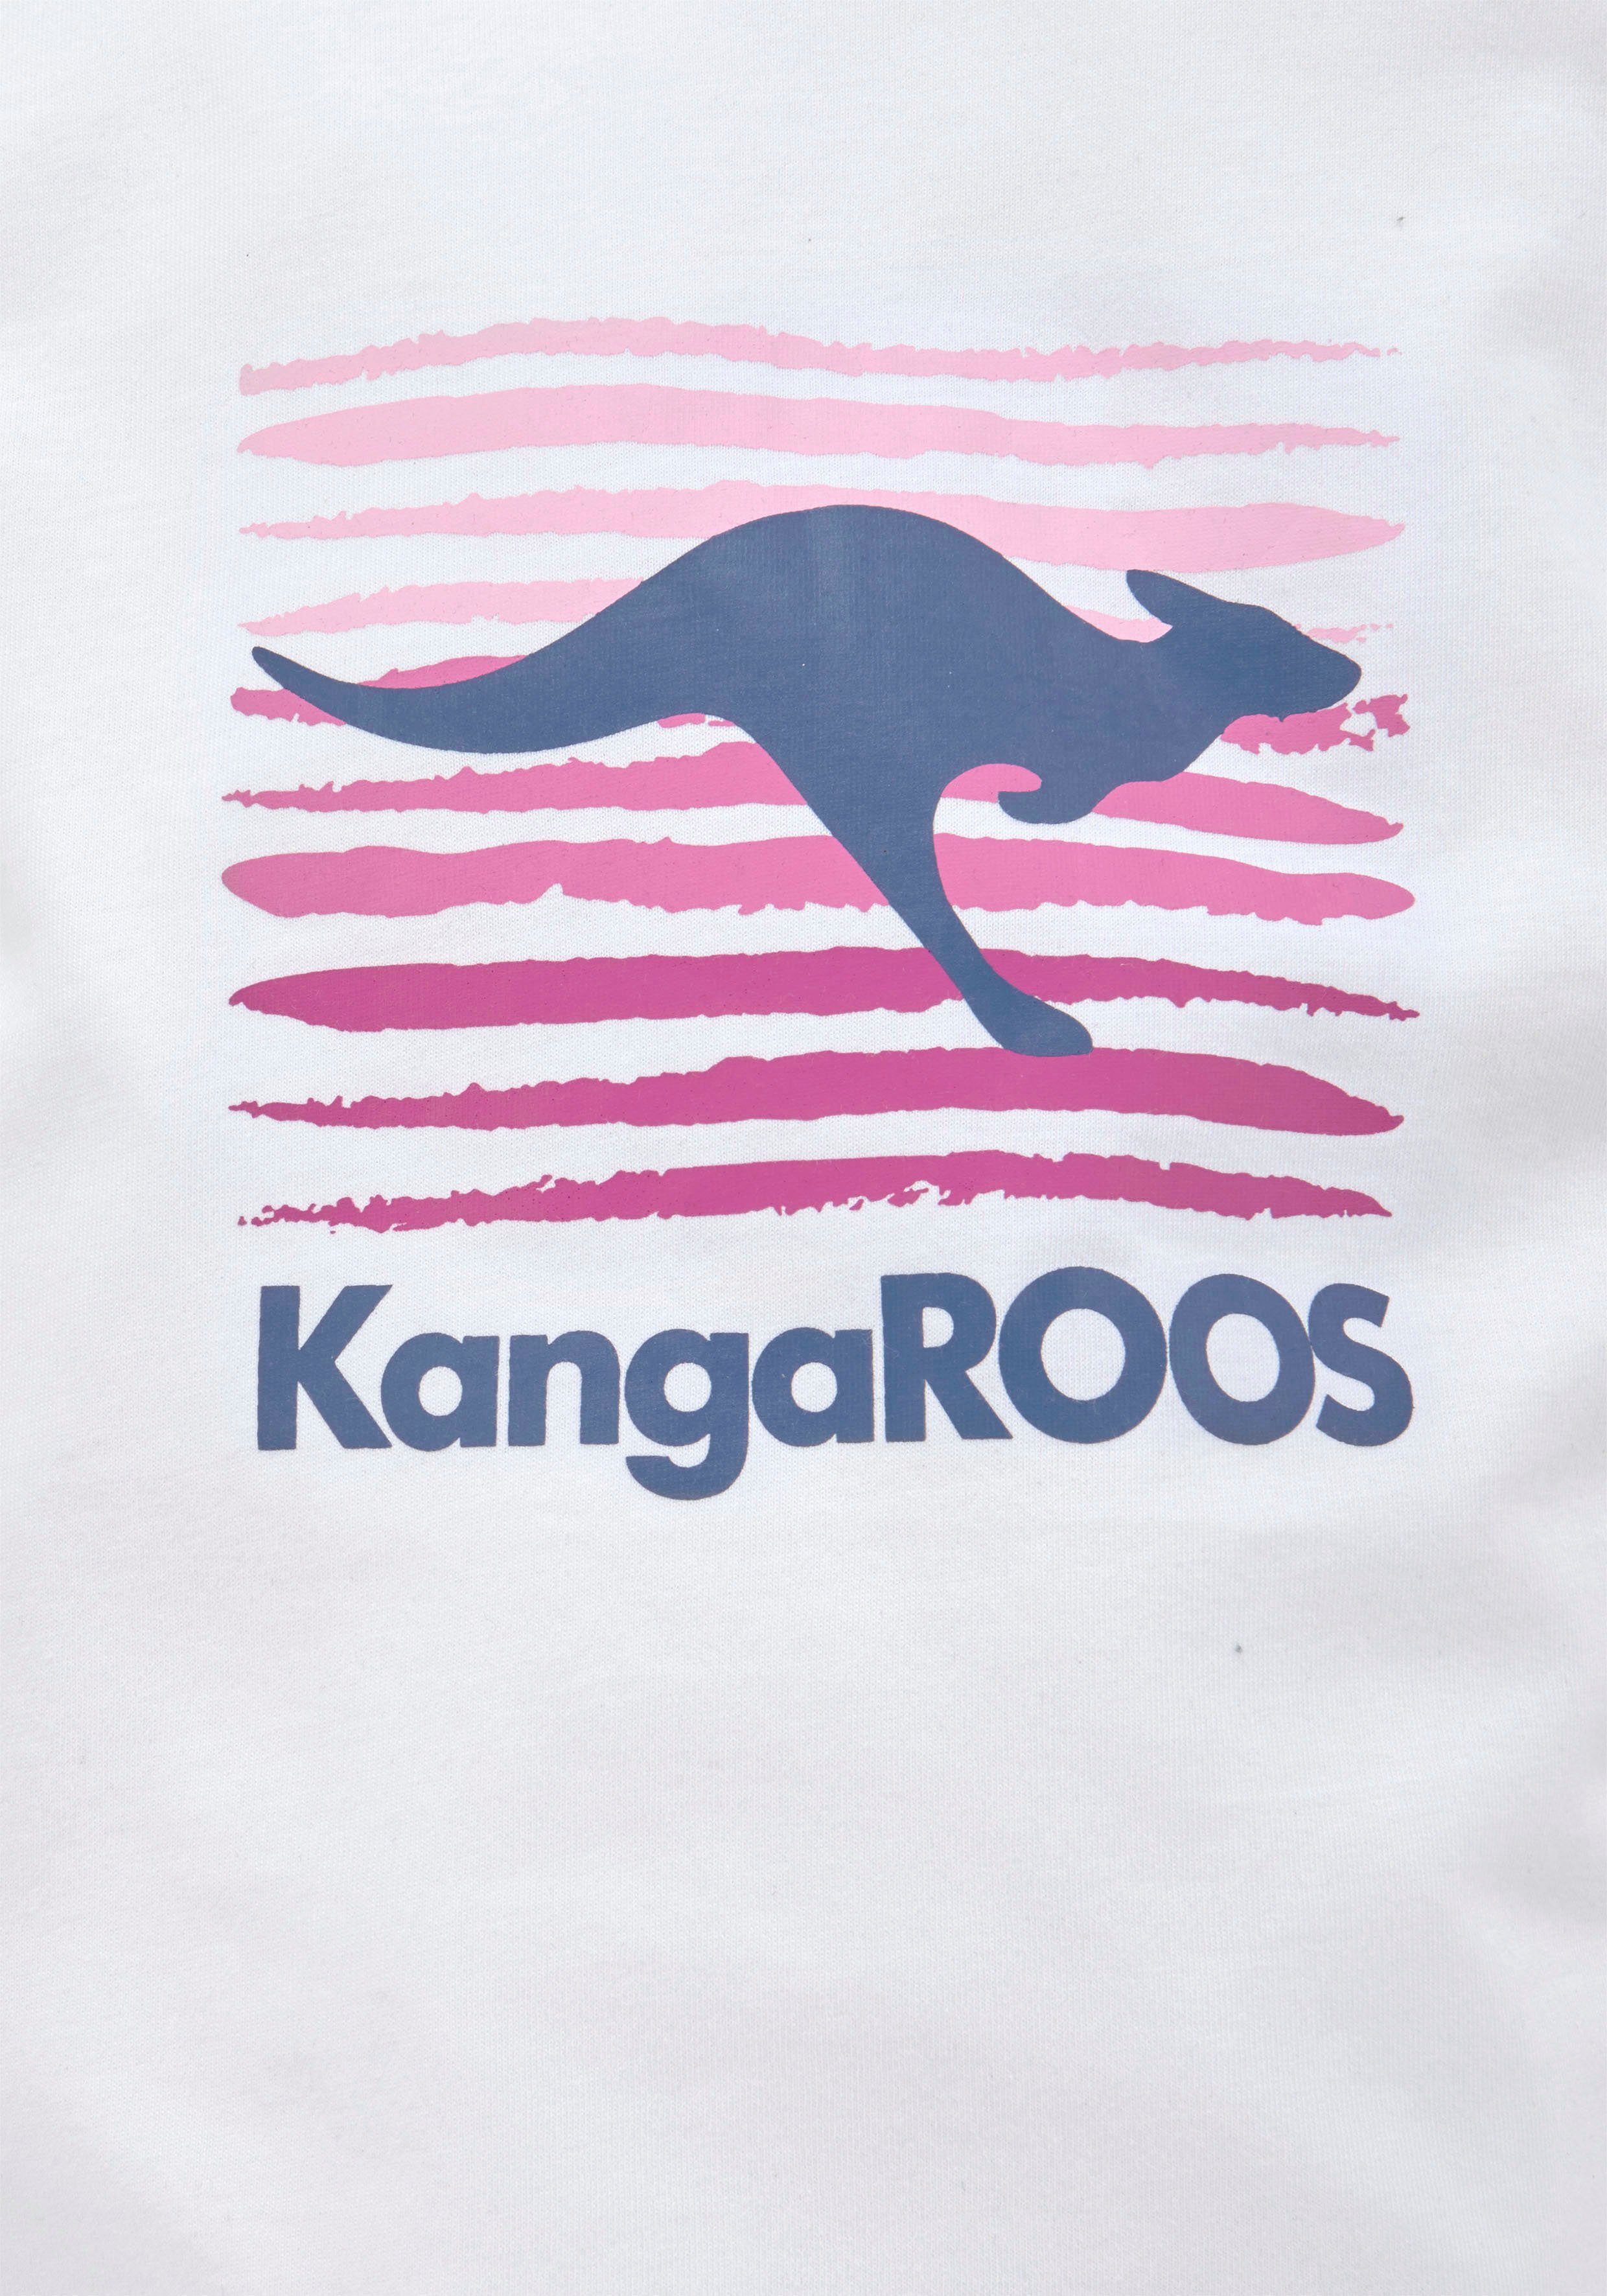 mit Logodruck großem KangaROOS T-Shirt